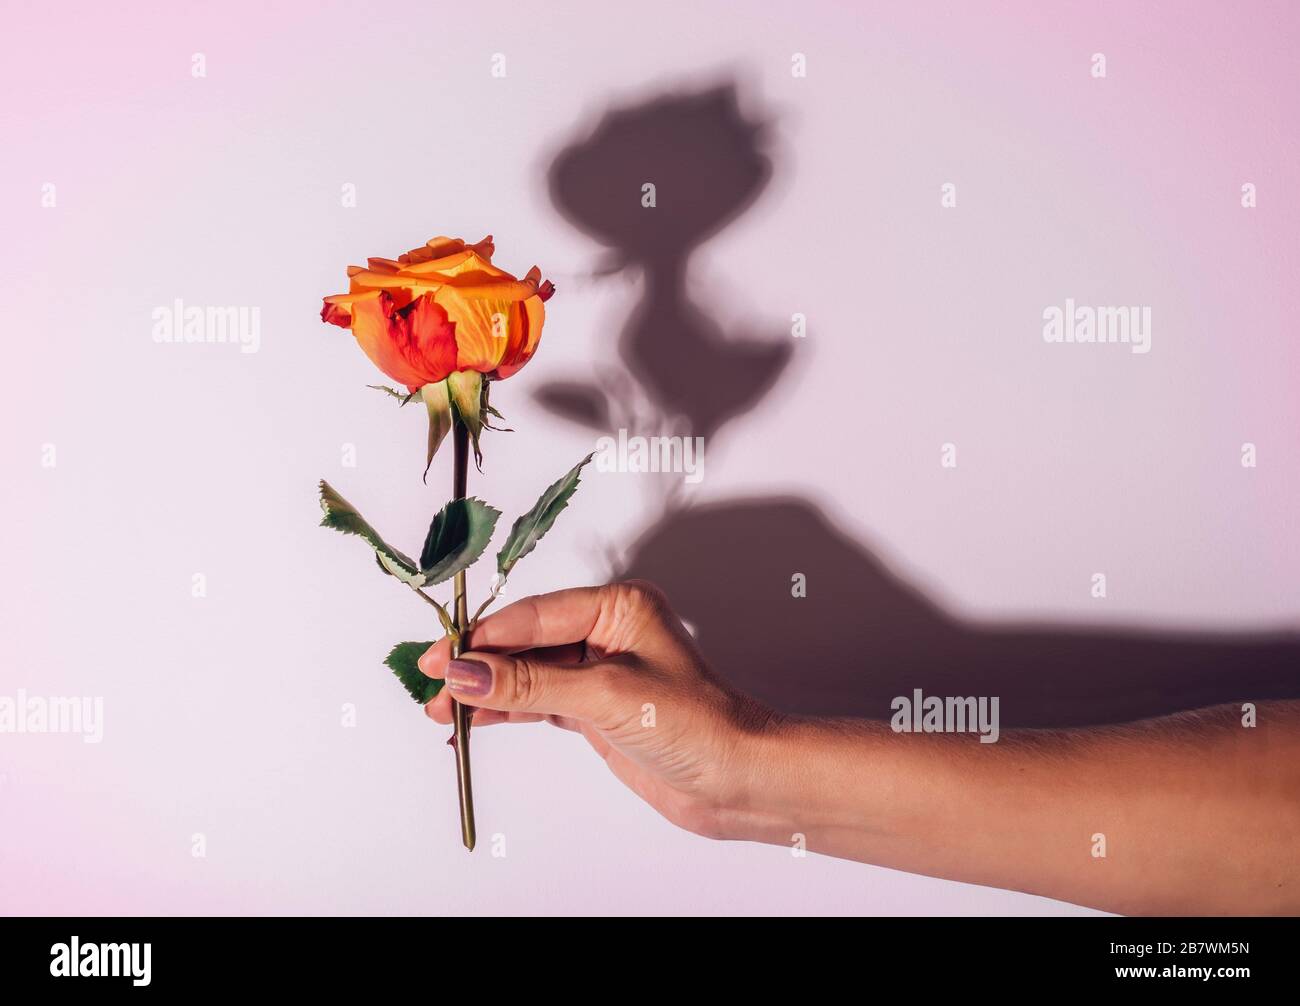 Orangefarbene Rose auf weißem, durchscheinendem Hintergrund und verschwommene Hände der Frau darunter. Konzept der Pflege und Zärtlichkeit für die Natur Stockfoto